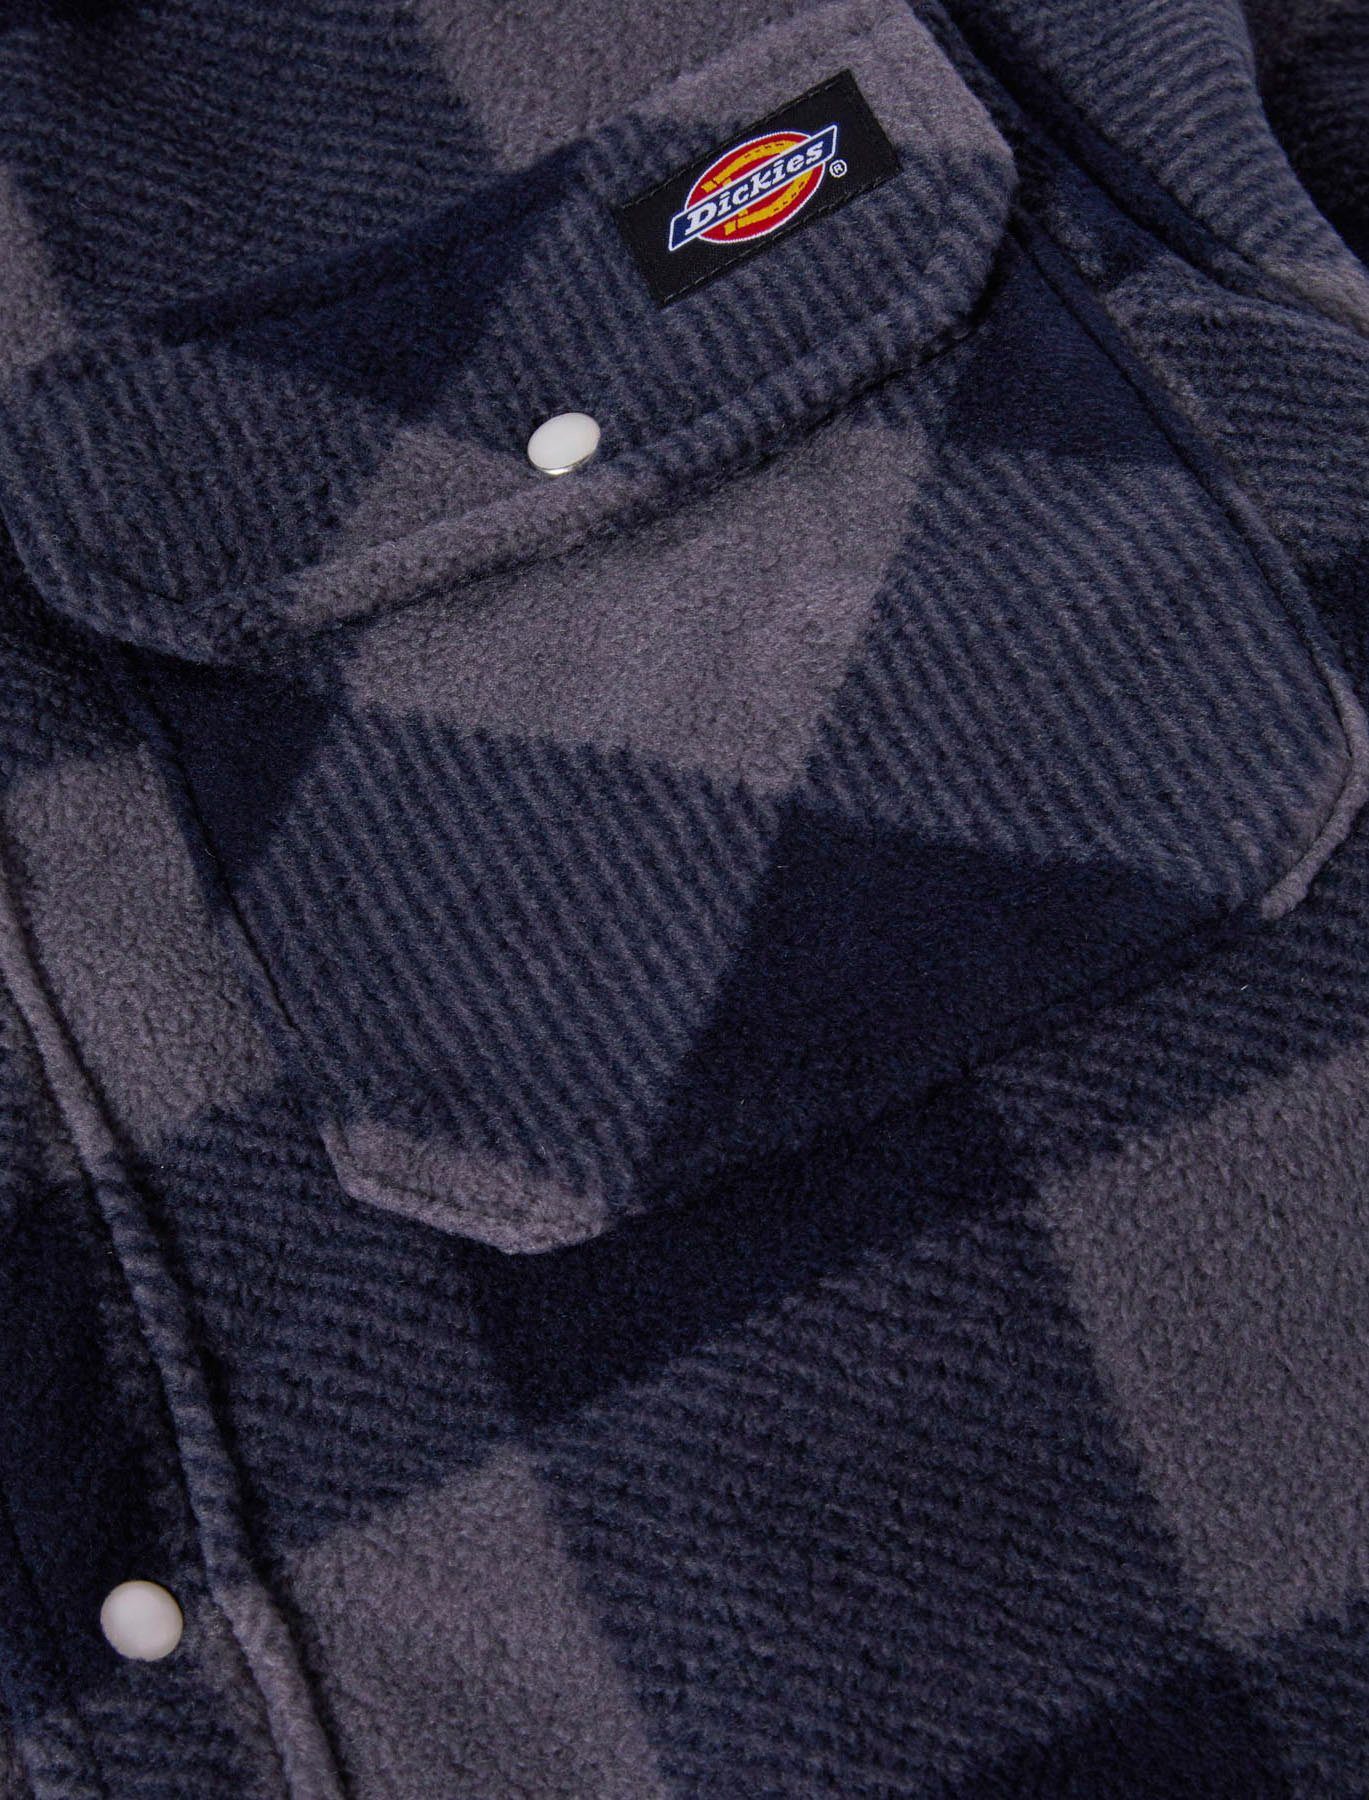 gefüttert blau-schwarz aus Dickies Thermohemd mit Portland Polarfleece, Brusttaschen 2 warm